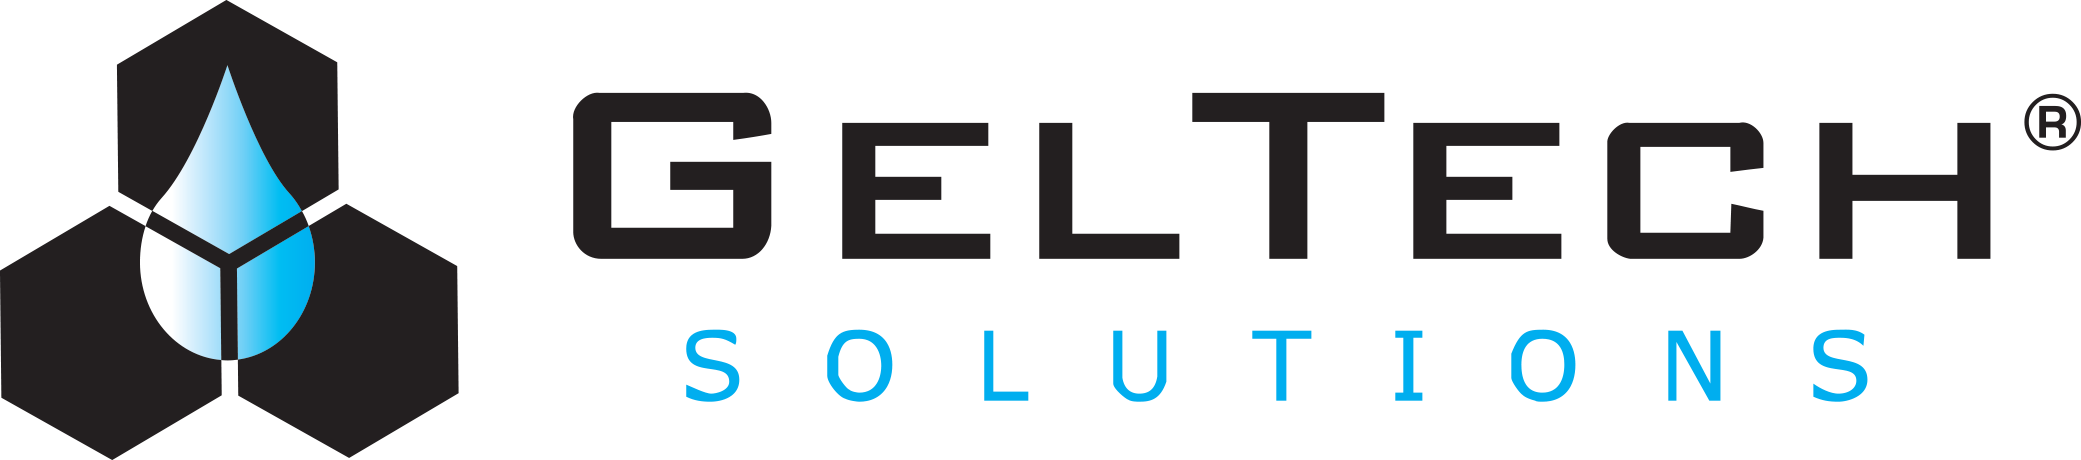 GelTech Solutions